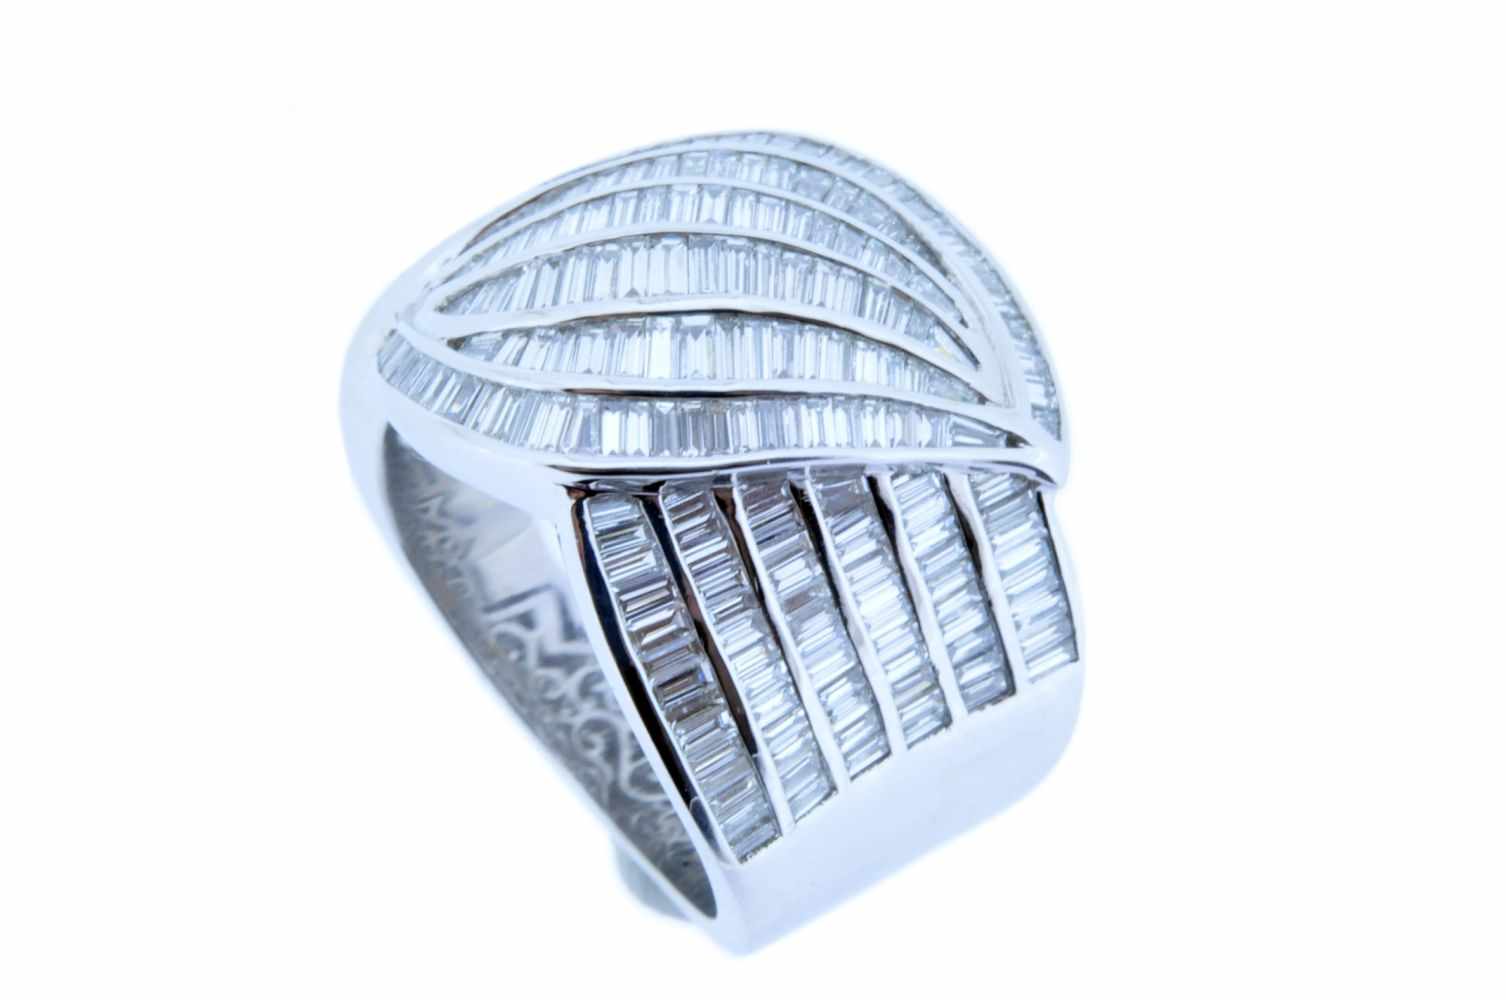 DiamantringWeißgoldener 18 karätiger Damenring mit Diamanten, zus. ca. 2,34 ct, Ringweite 55, 14,5